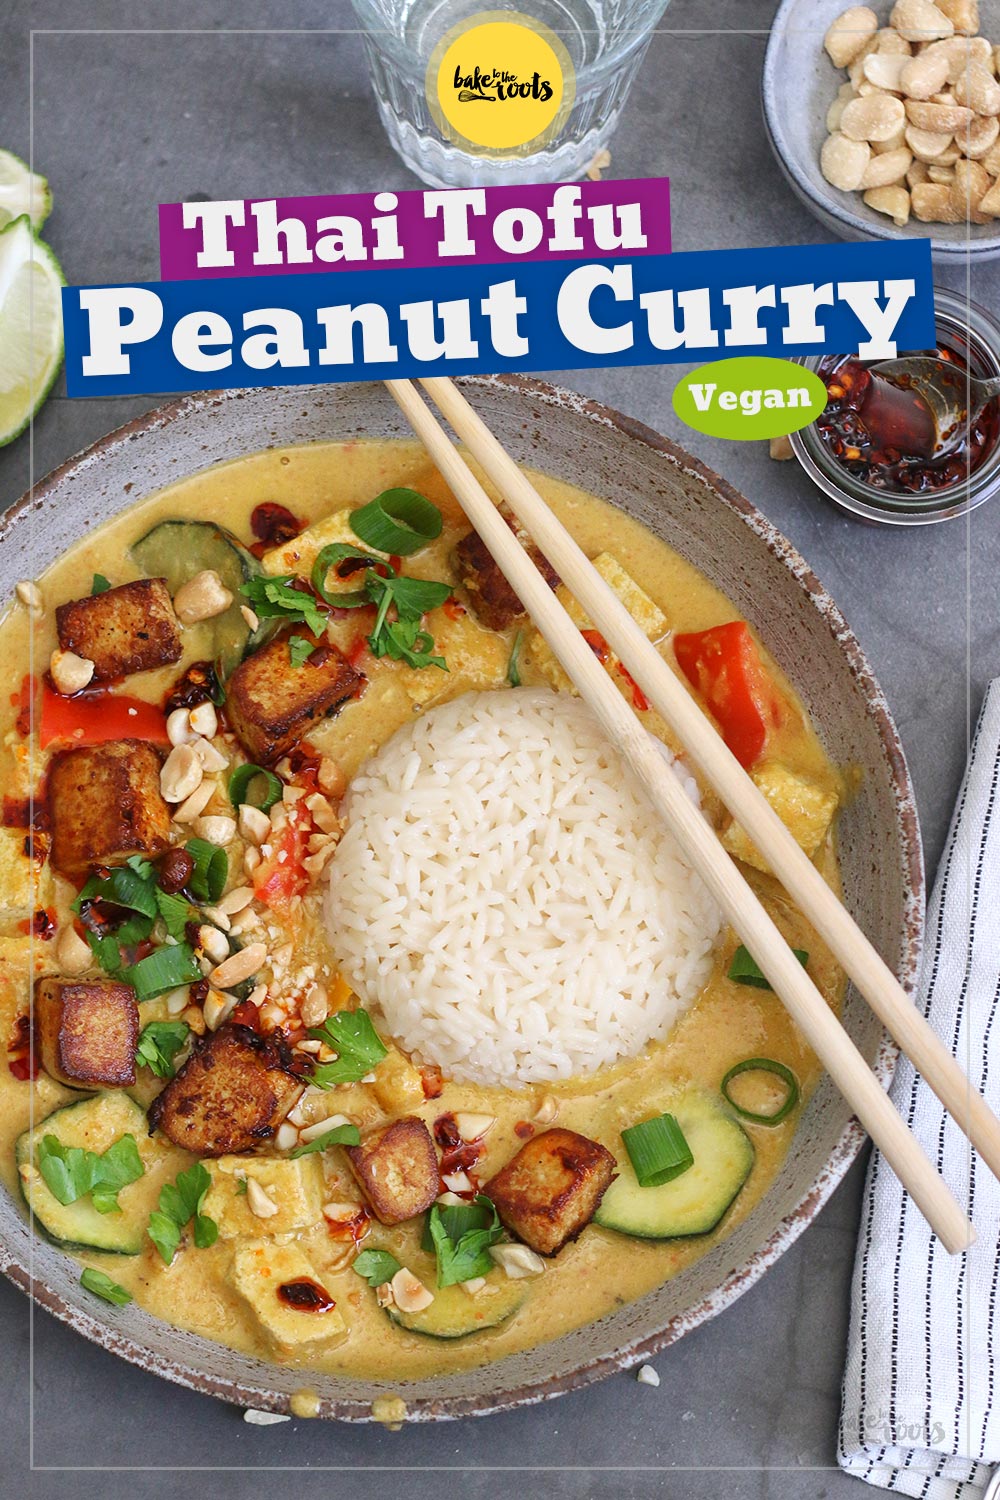 Vegan Thai Peanut & Tofu Curry | Bake to the roots